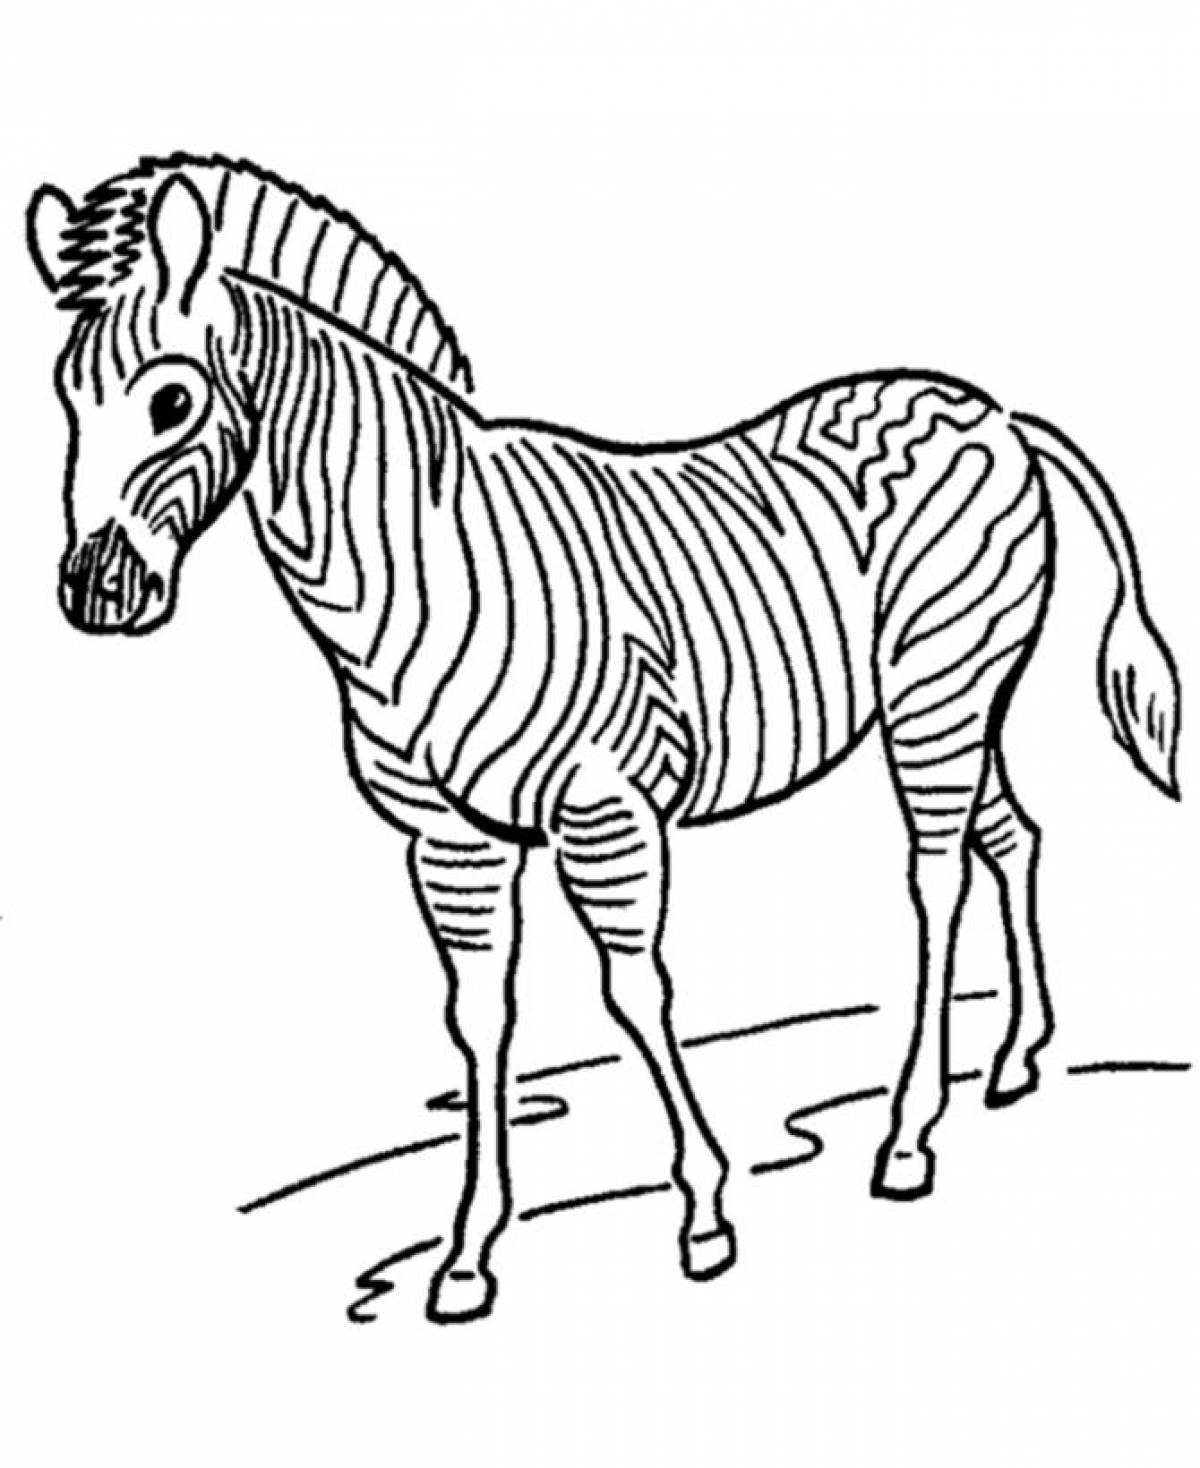 Увлекательная раскраска зебра для детей